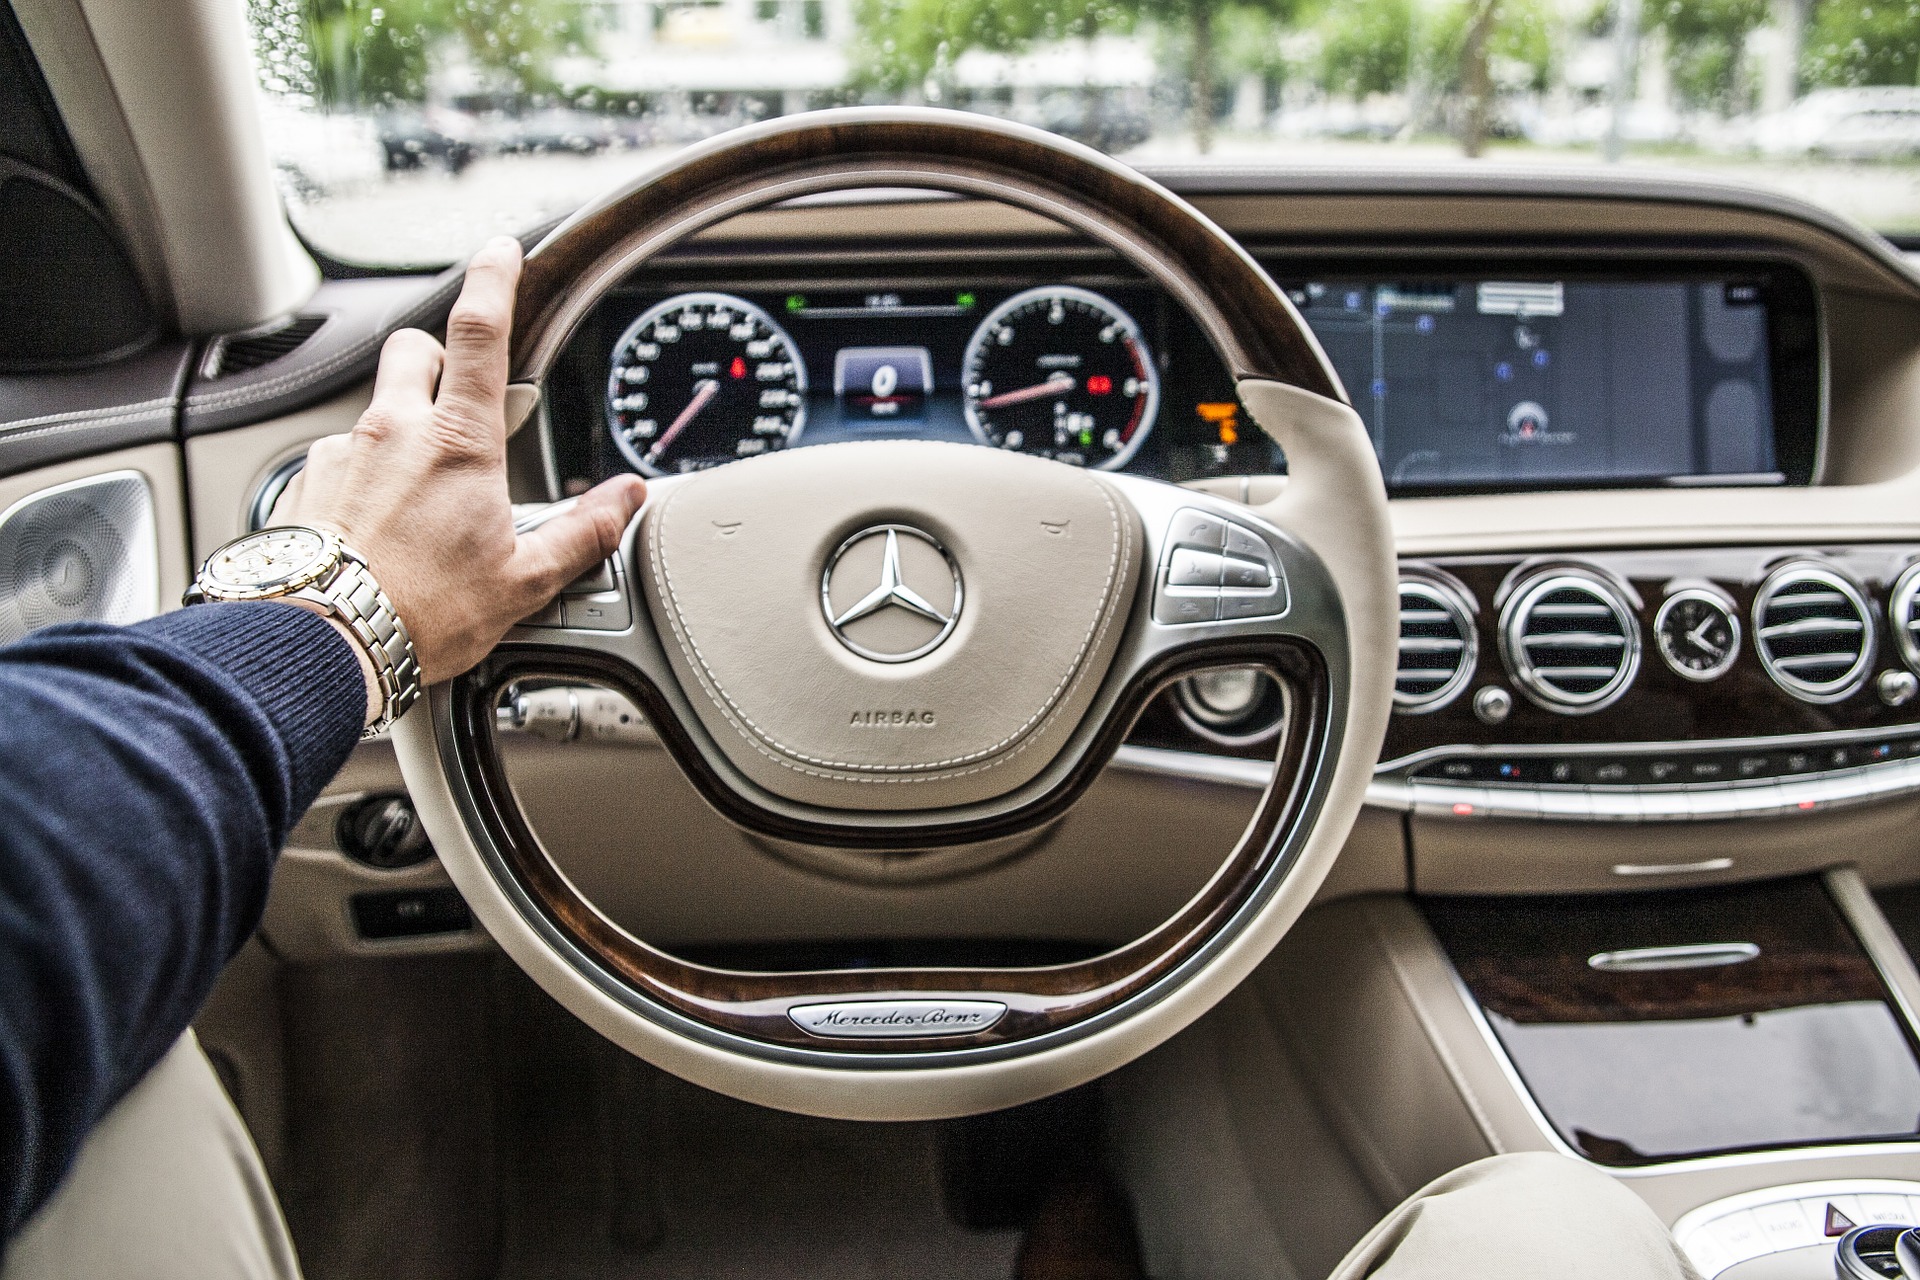 Dealergroep Stern vertegenwoordigt meerdere merken, waaronder Mercedes-Benz.